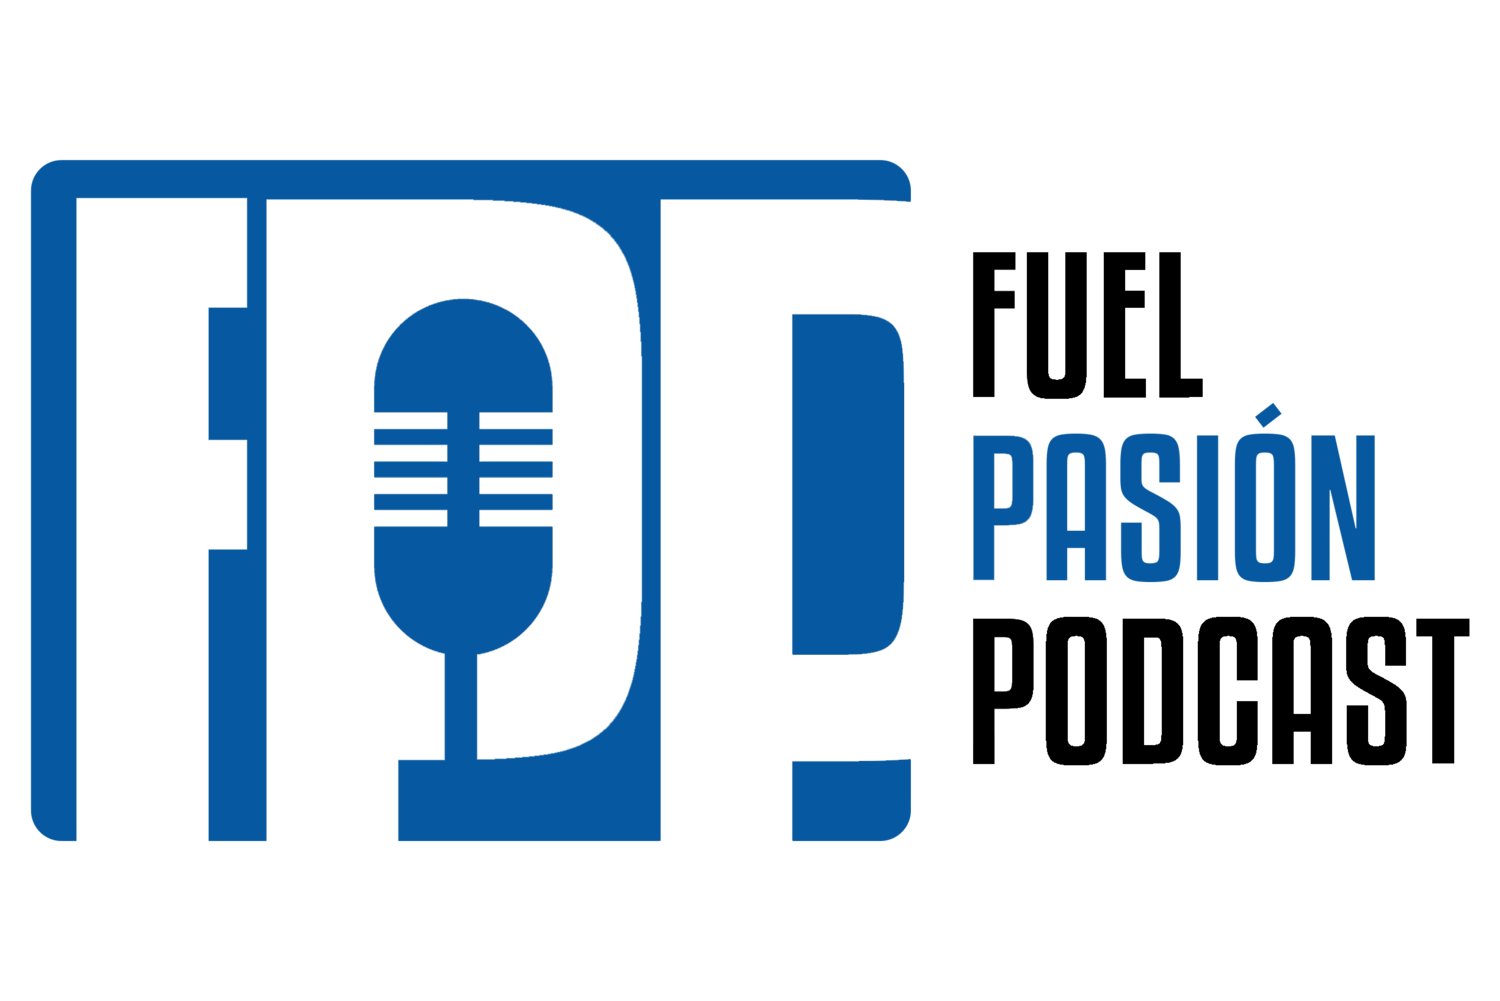 Fuel Pasión Podcast